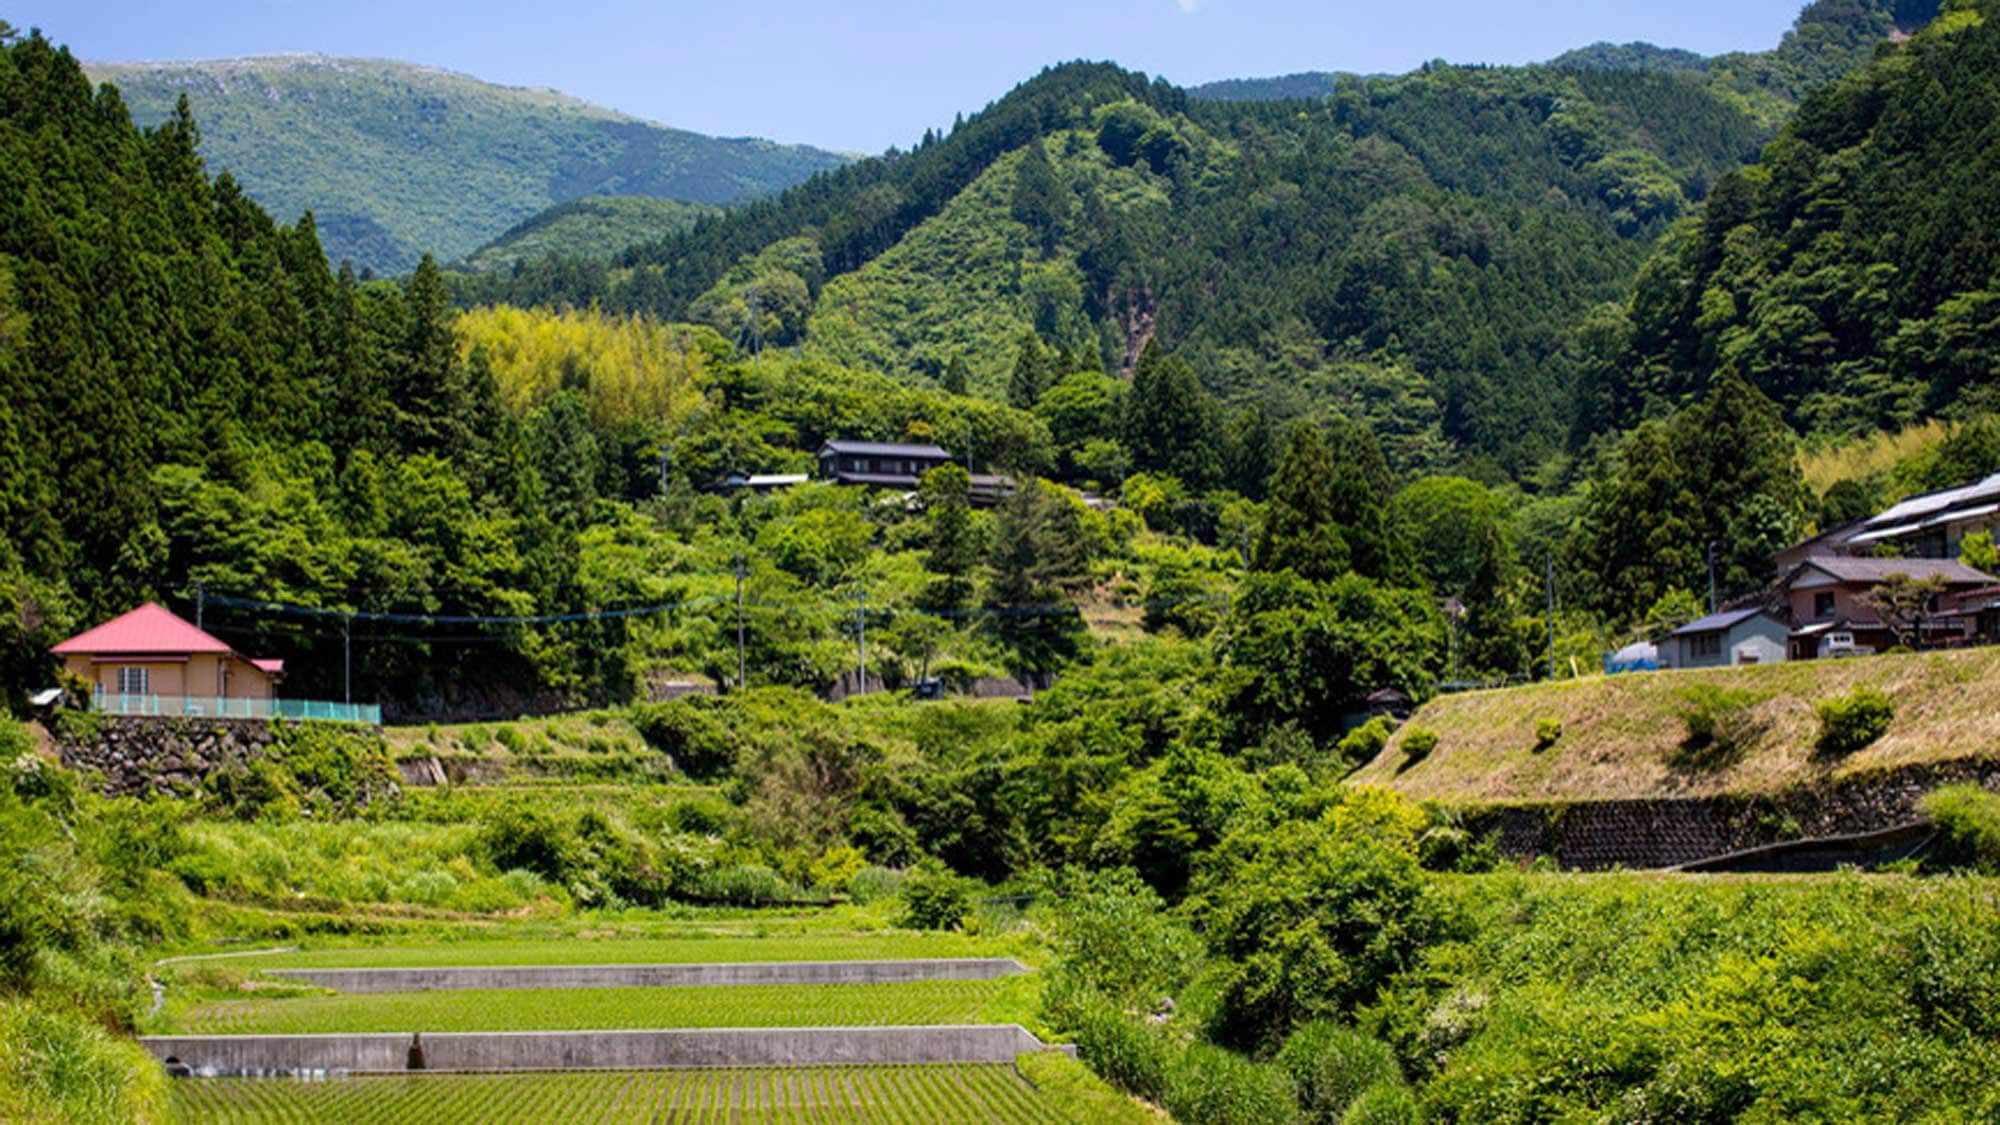 【外观】上子屋远景是自然蔓延的山村